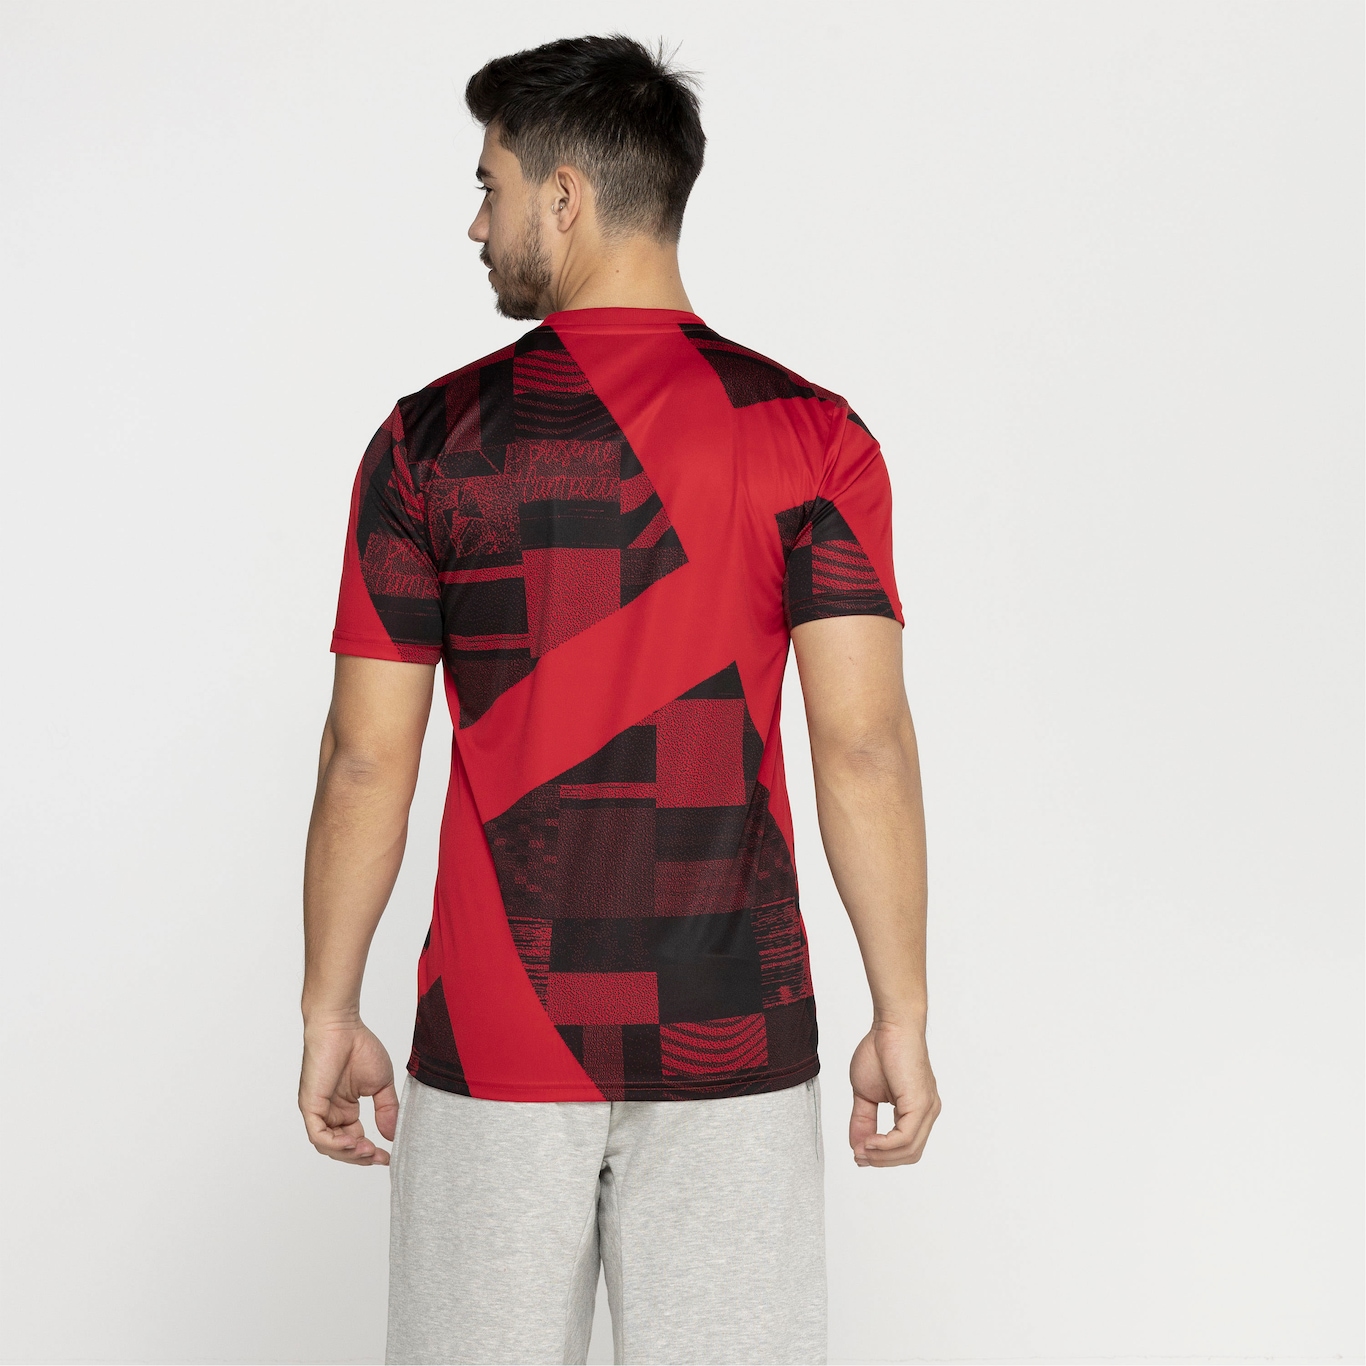 Camisa Pré-Jogo do Flamengo 23 adidas - Masculina - Foto 2